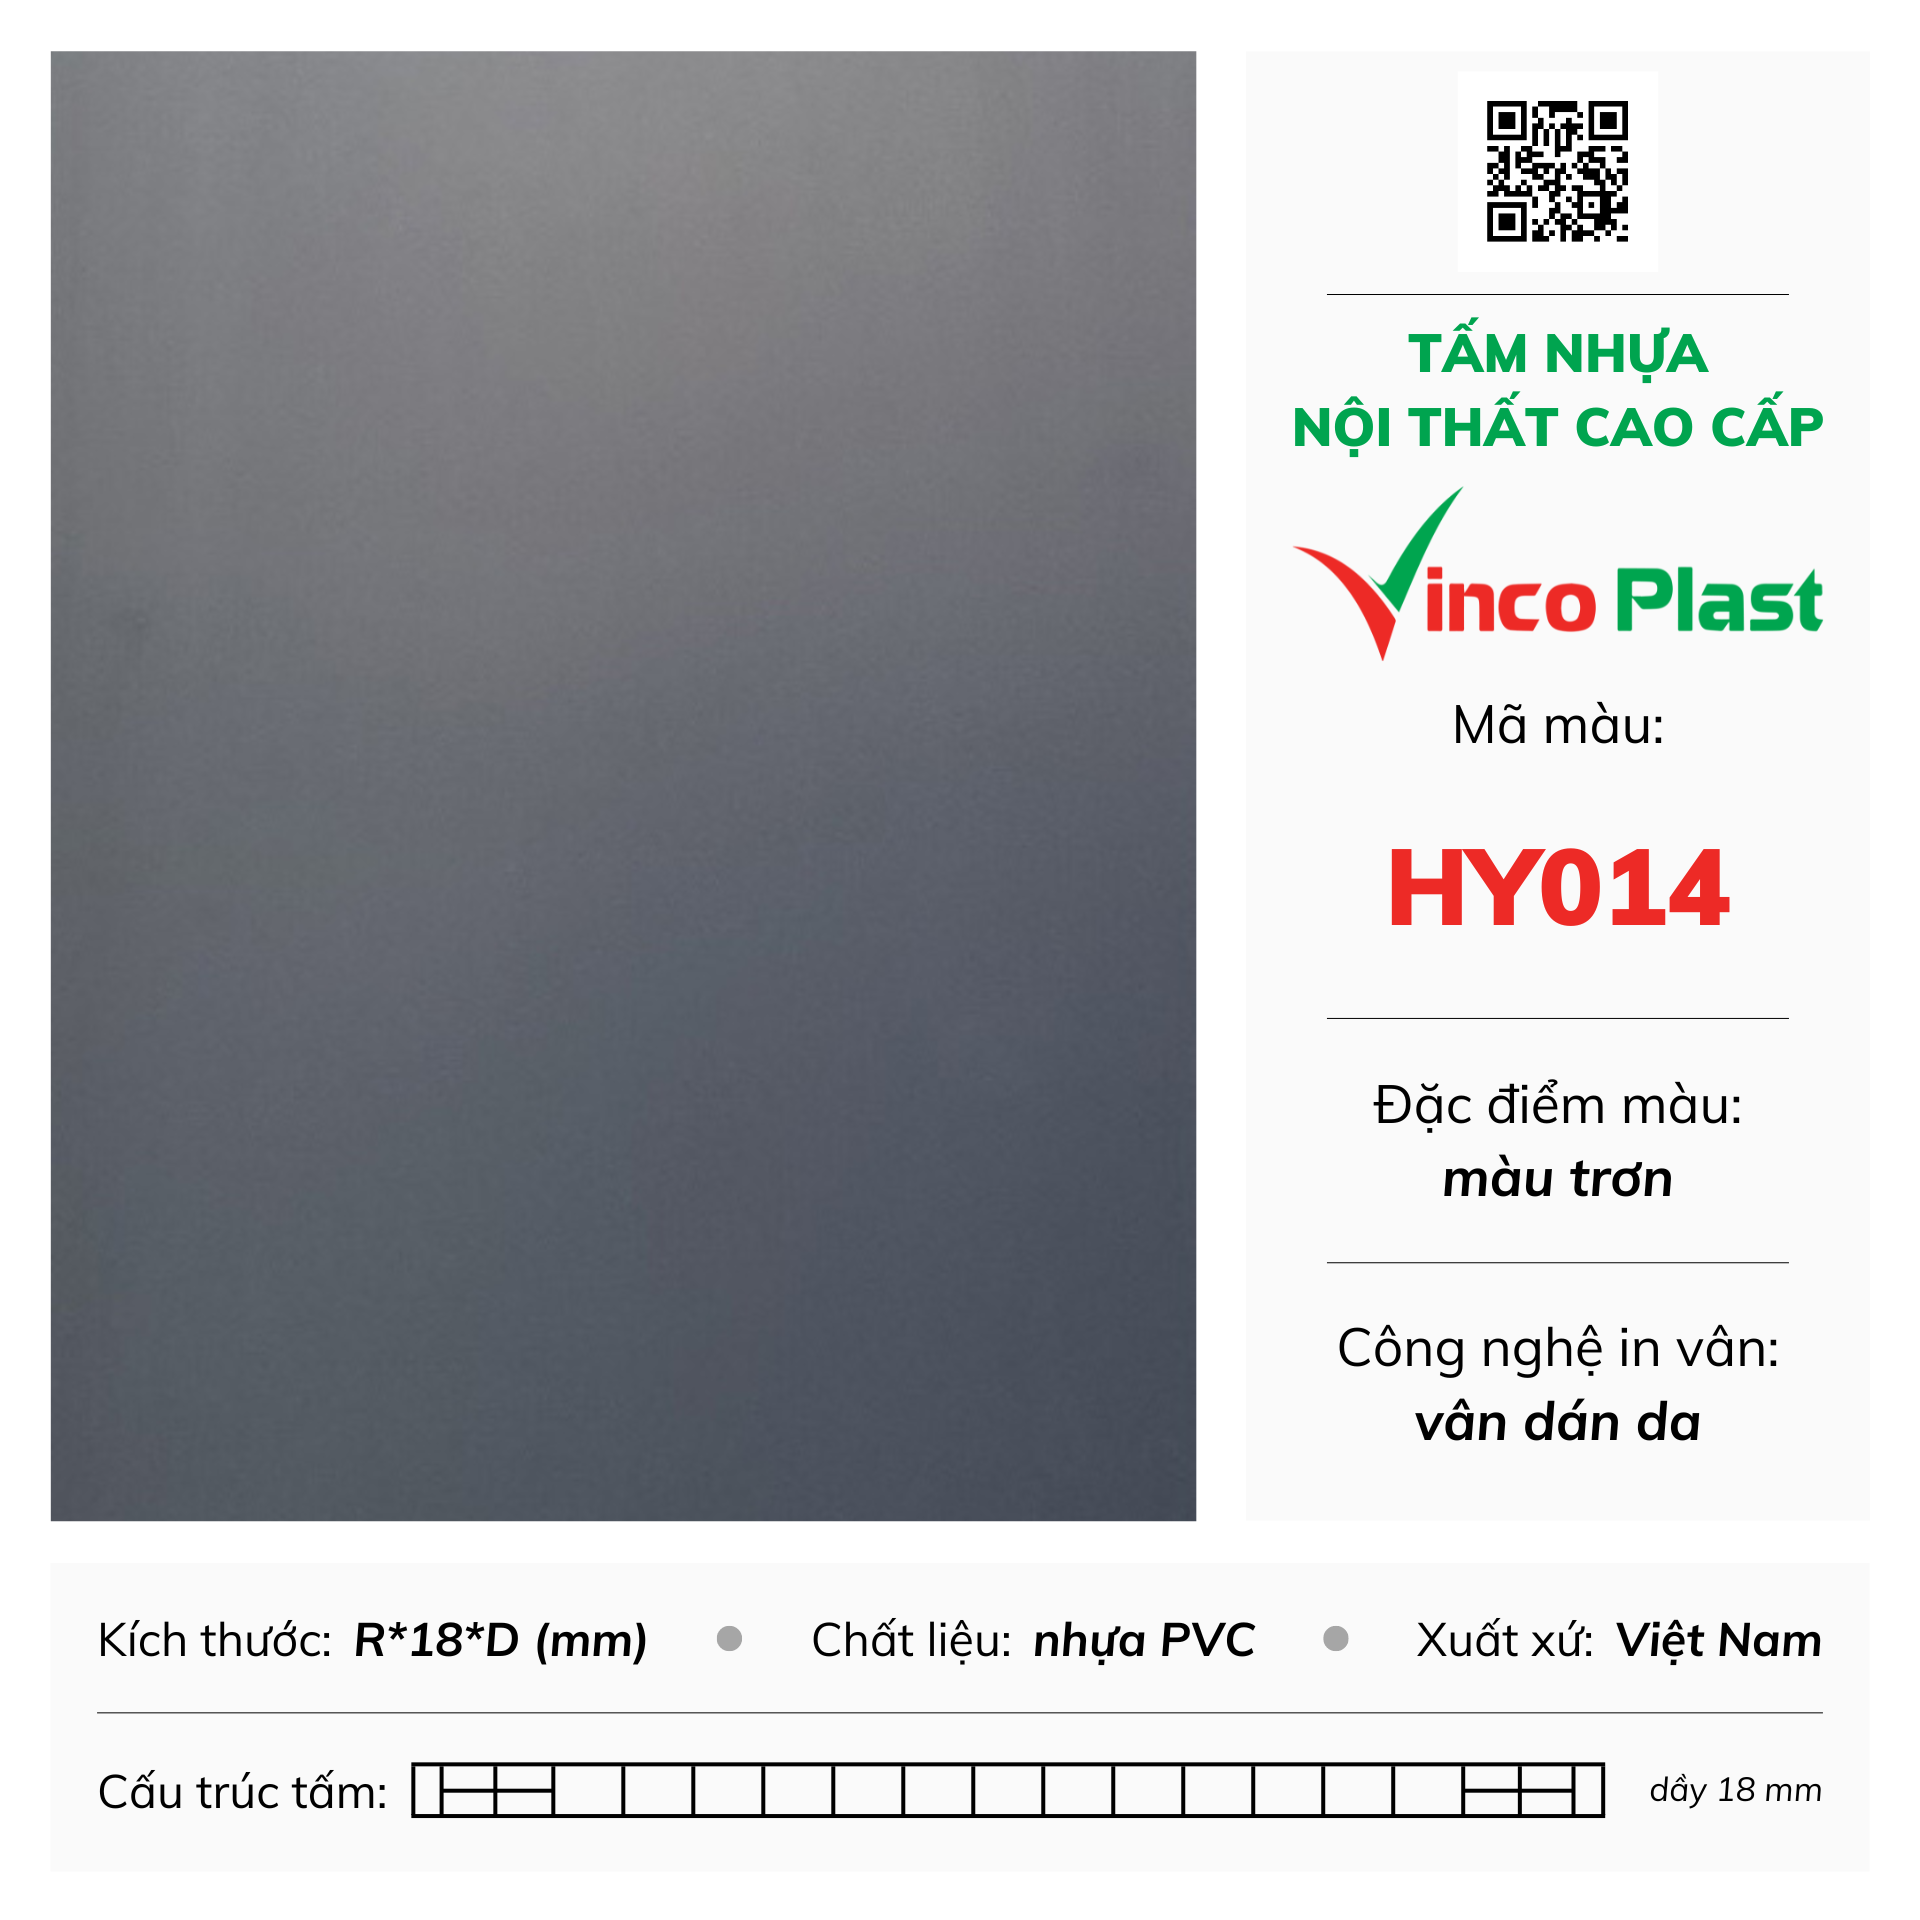 Tấm nhựa nội thất cao cấp Vincoplast màu HY014 (2)